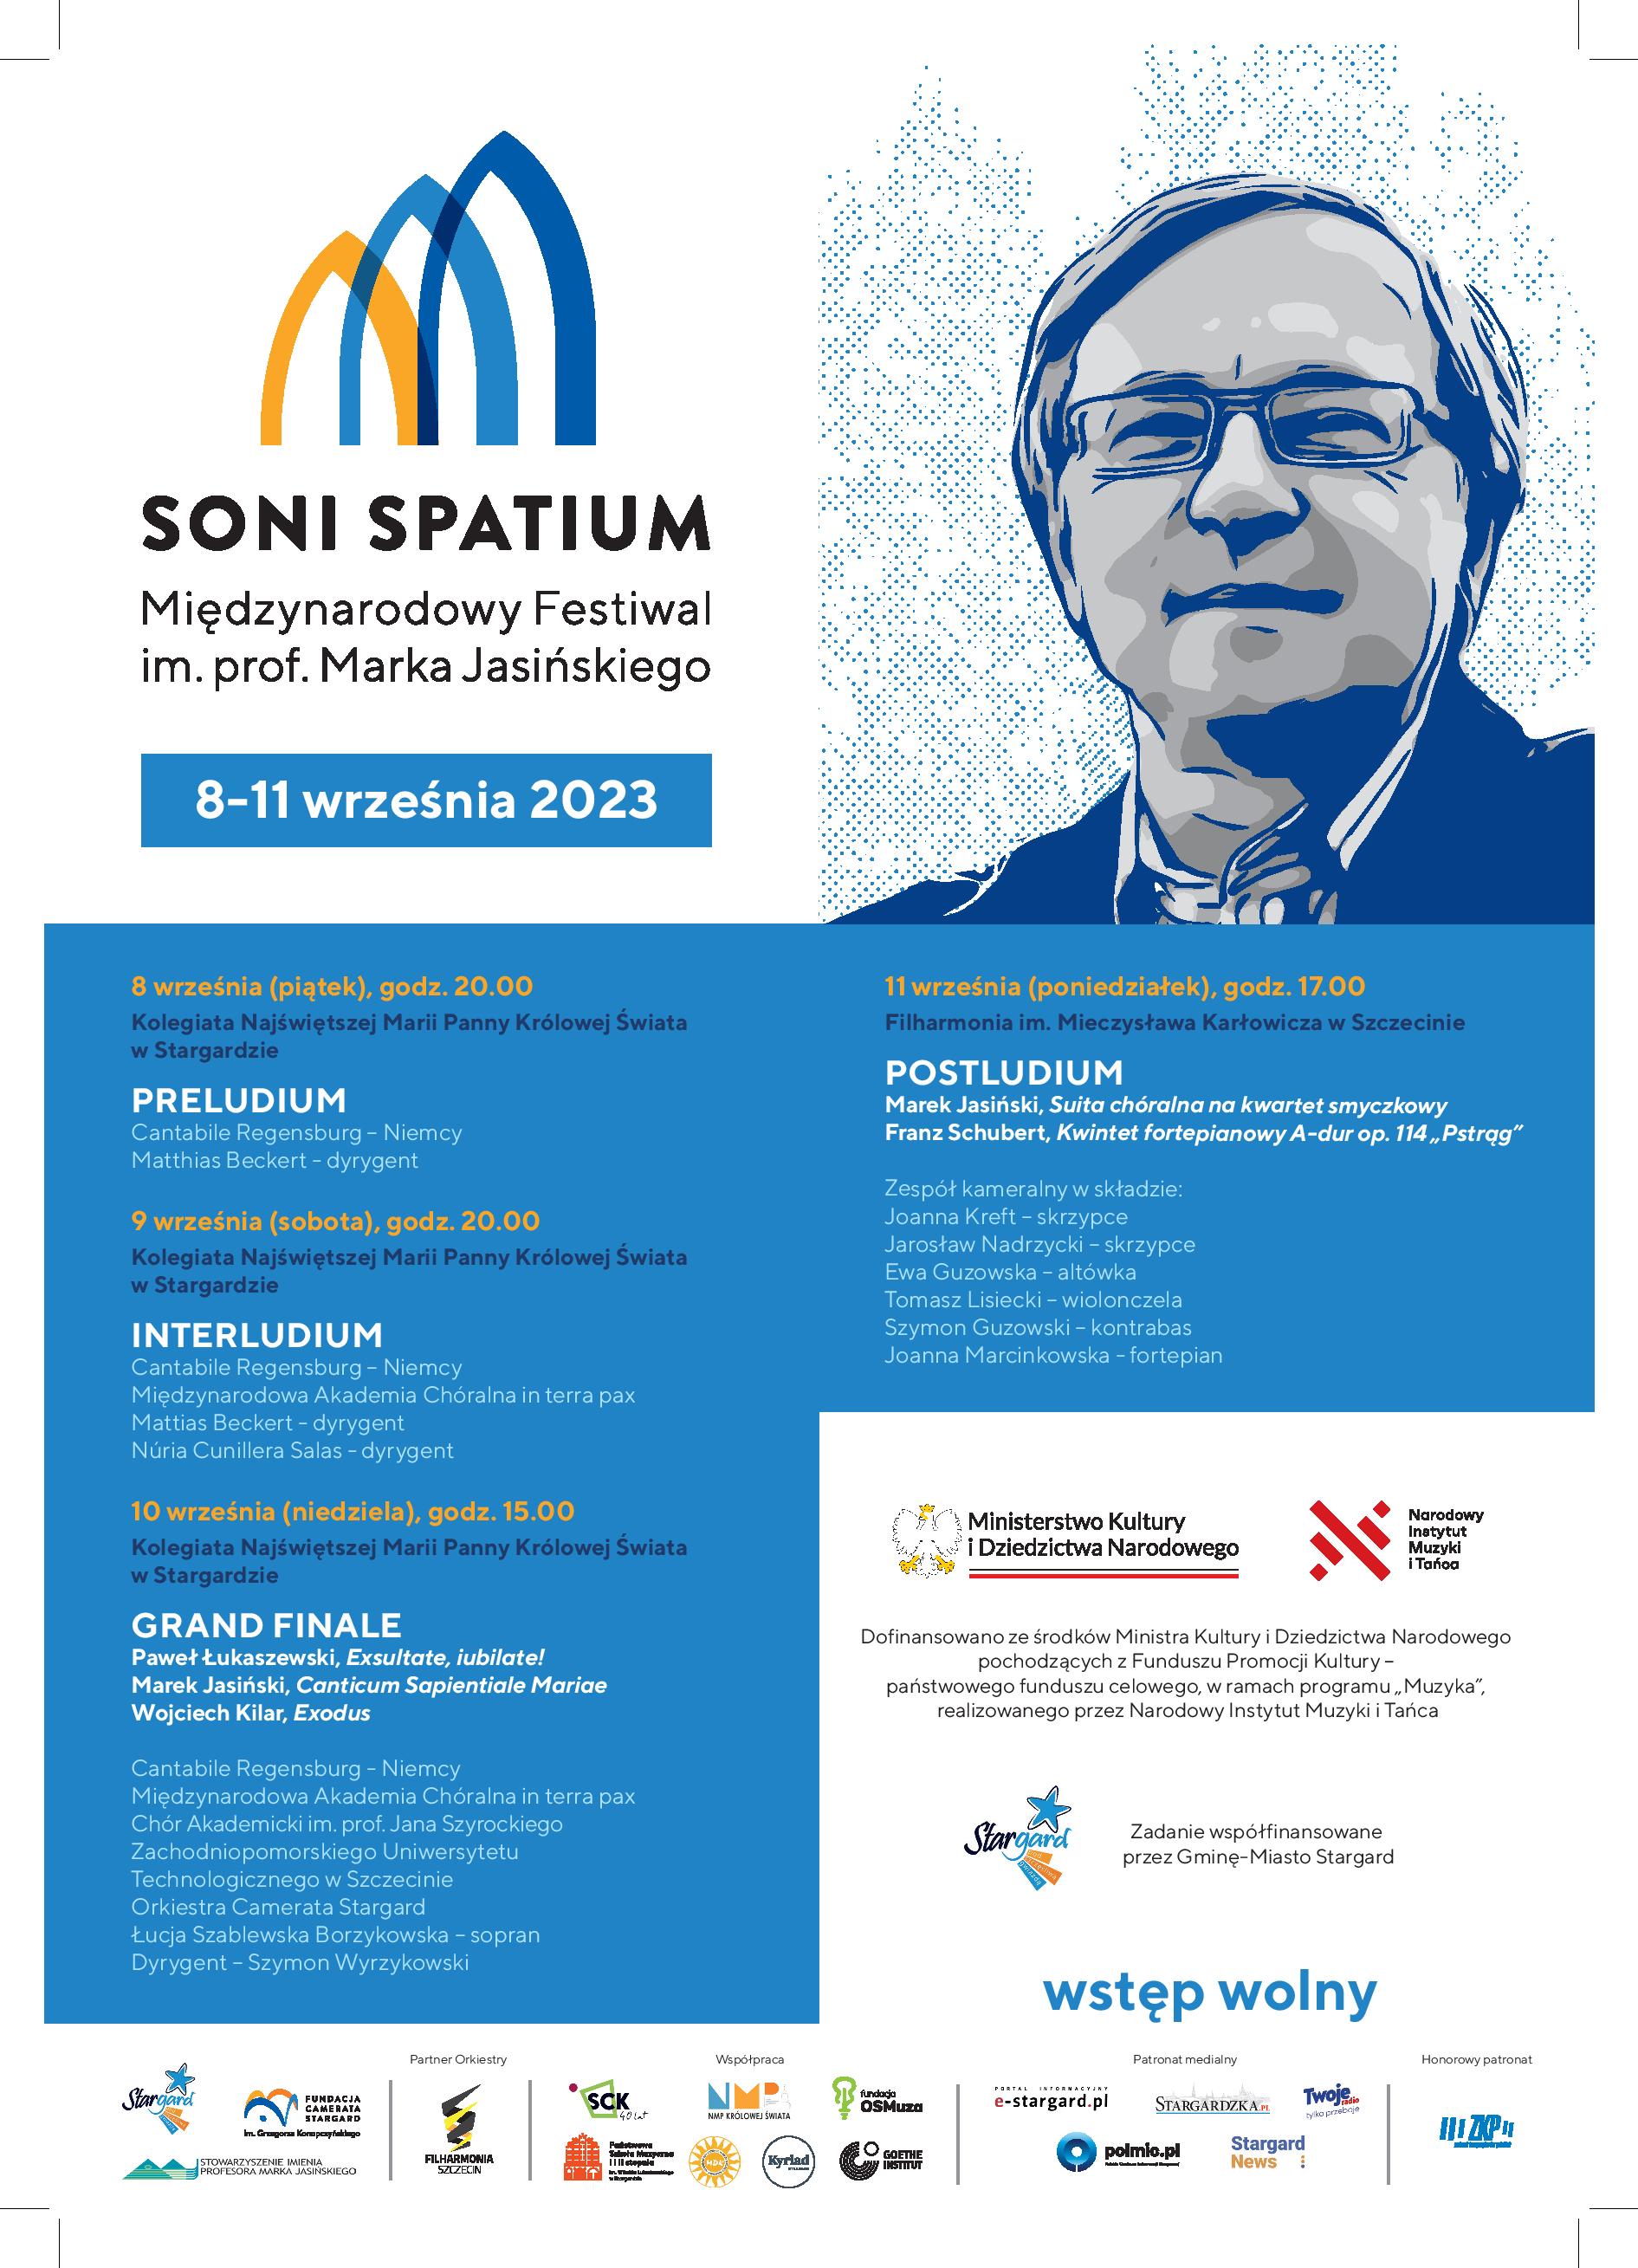 Plakat informacyjny Międzynarodowego Festiwalu SONI SPATIUM im. prof. Marka Jasińskiego w dniach 8 do 11 września 2023. Tło plakatu jest biało-niebieskie, w jego górnej części znajduje się logo festiwalu oraz grafika twarzy prof. Marka Jasińskiego a poniżej znajduje się harmonogram i program koncertów.